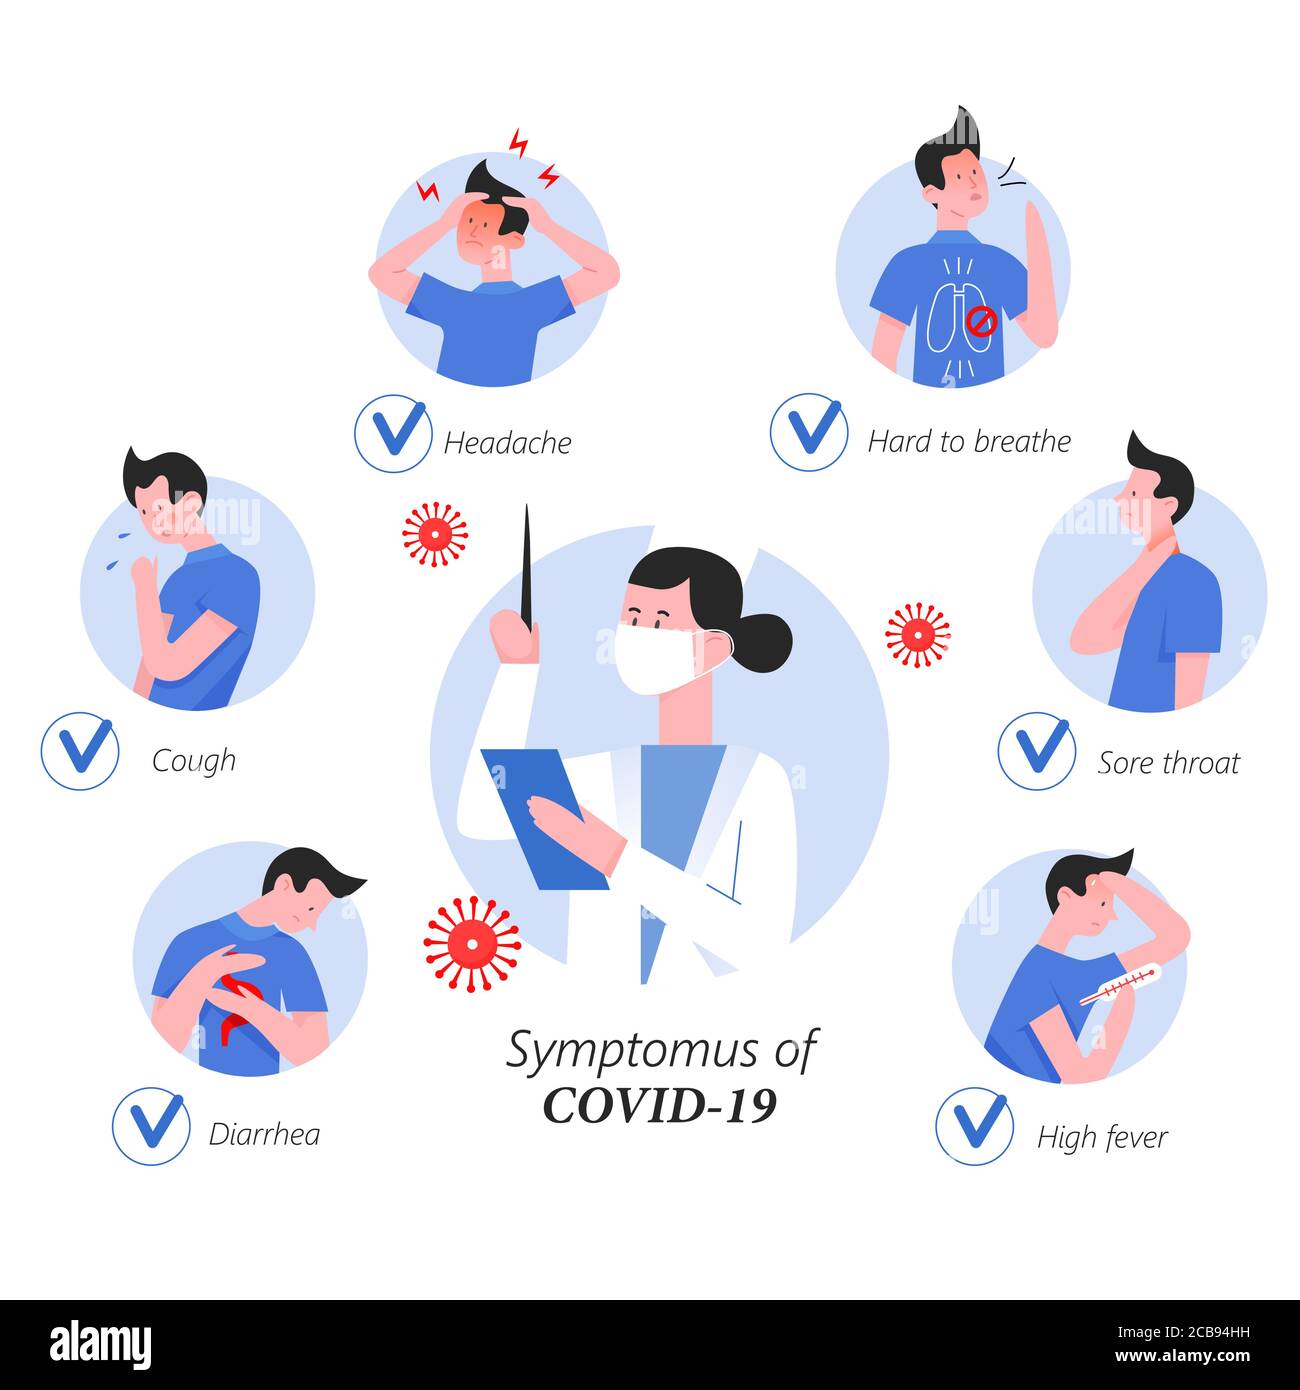 Coronavirus Symptome Infografik flache Vektor Illustration. Symbole im Kreis mit Arzt in der Mitte zeigt Zeichen von covid 19. Schwer zu atmen, Halsschmerzen, hohes Fieber, Durchfall, Husten, Kopfschmerzen Stock Vektor